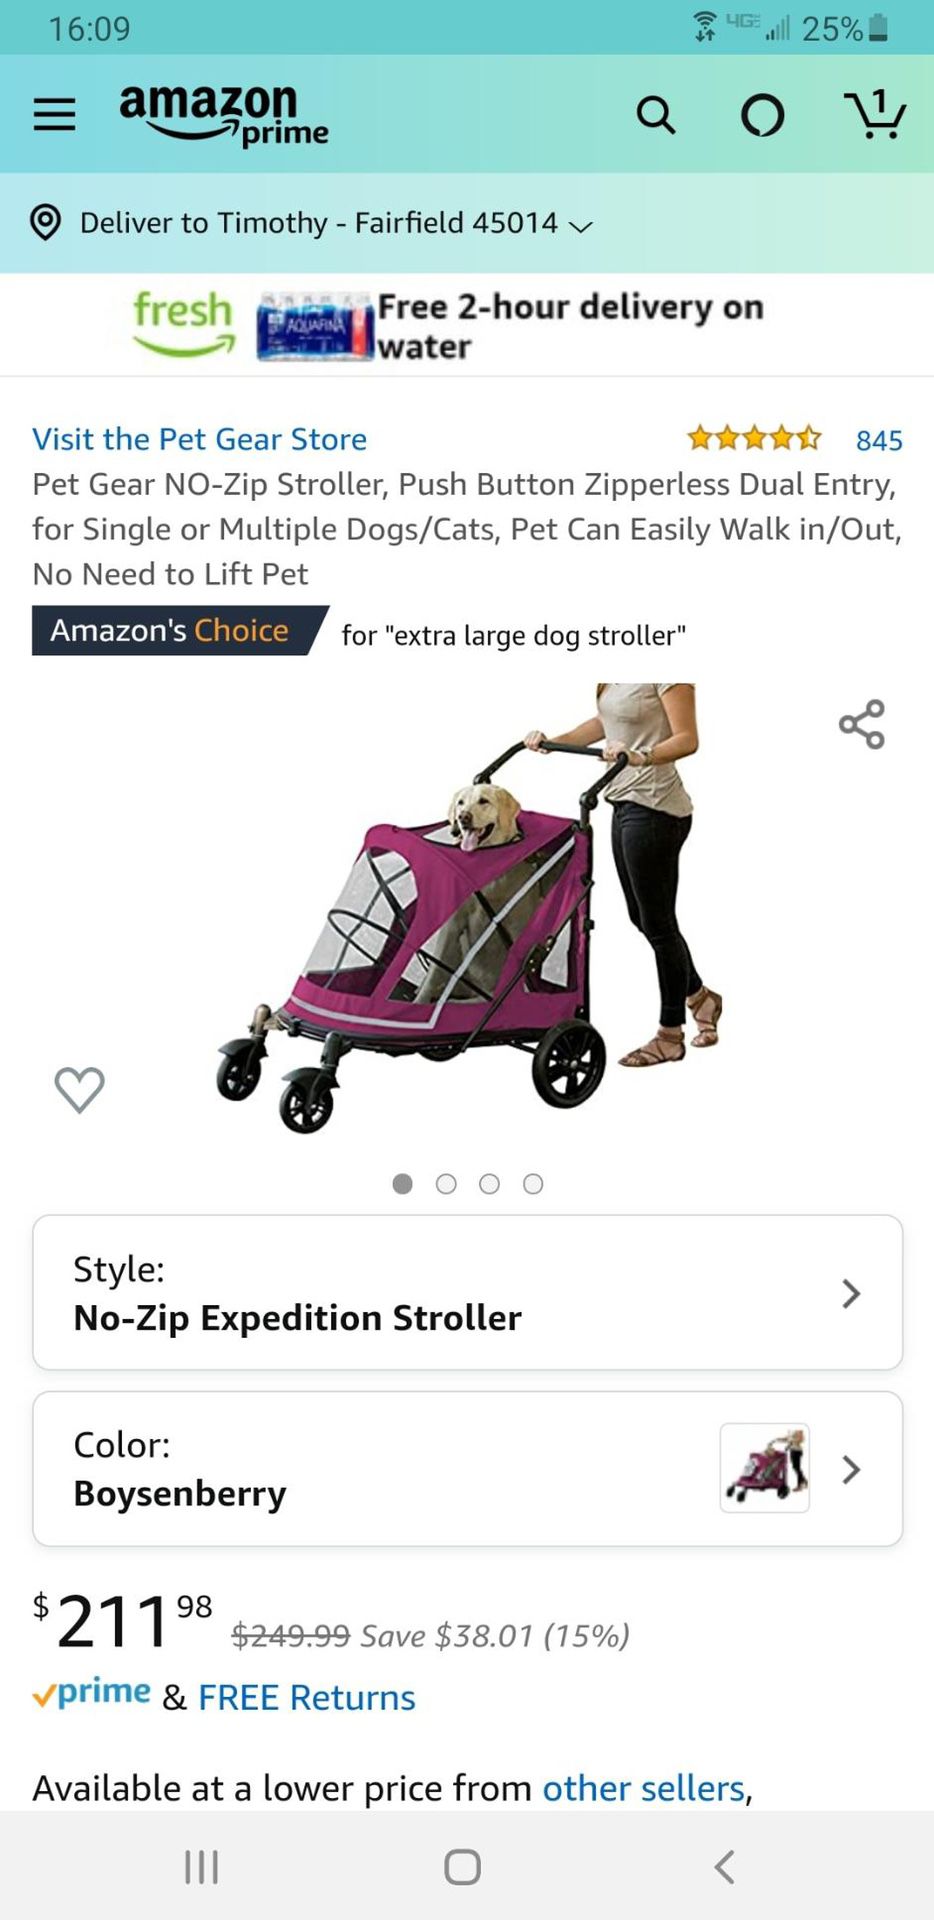 Large dog stroller